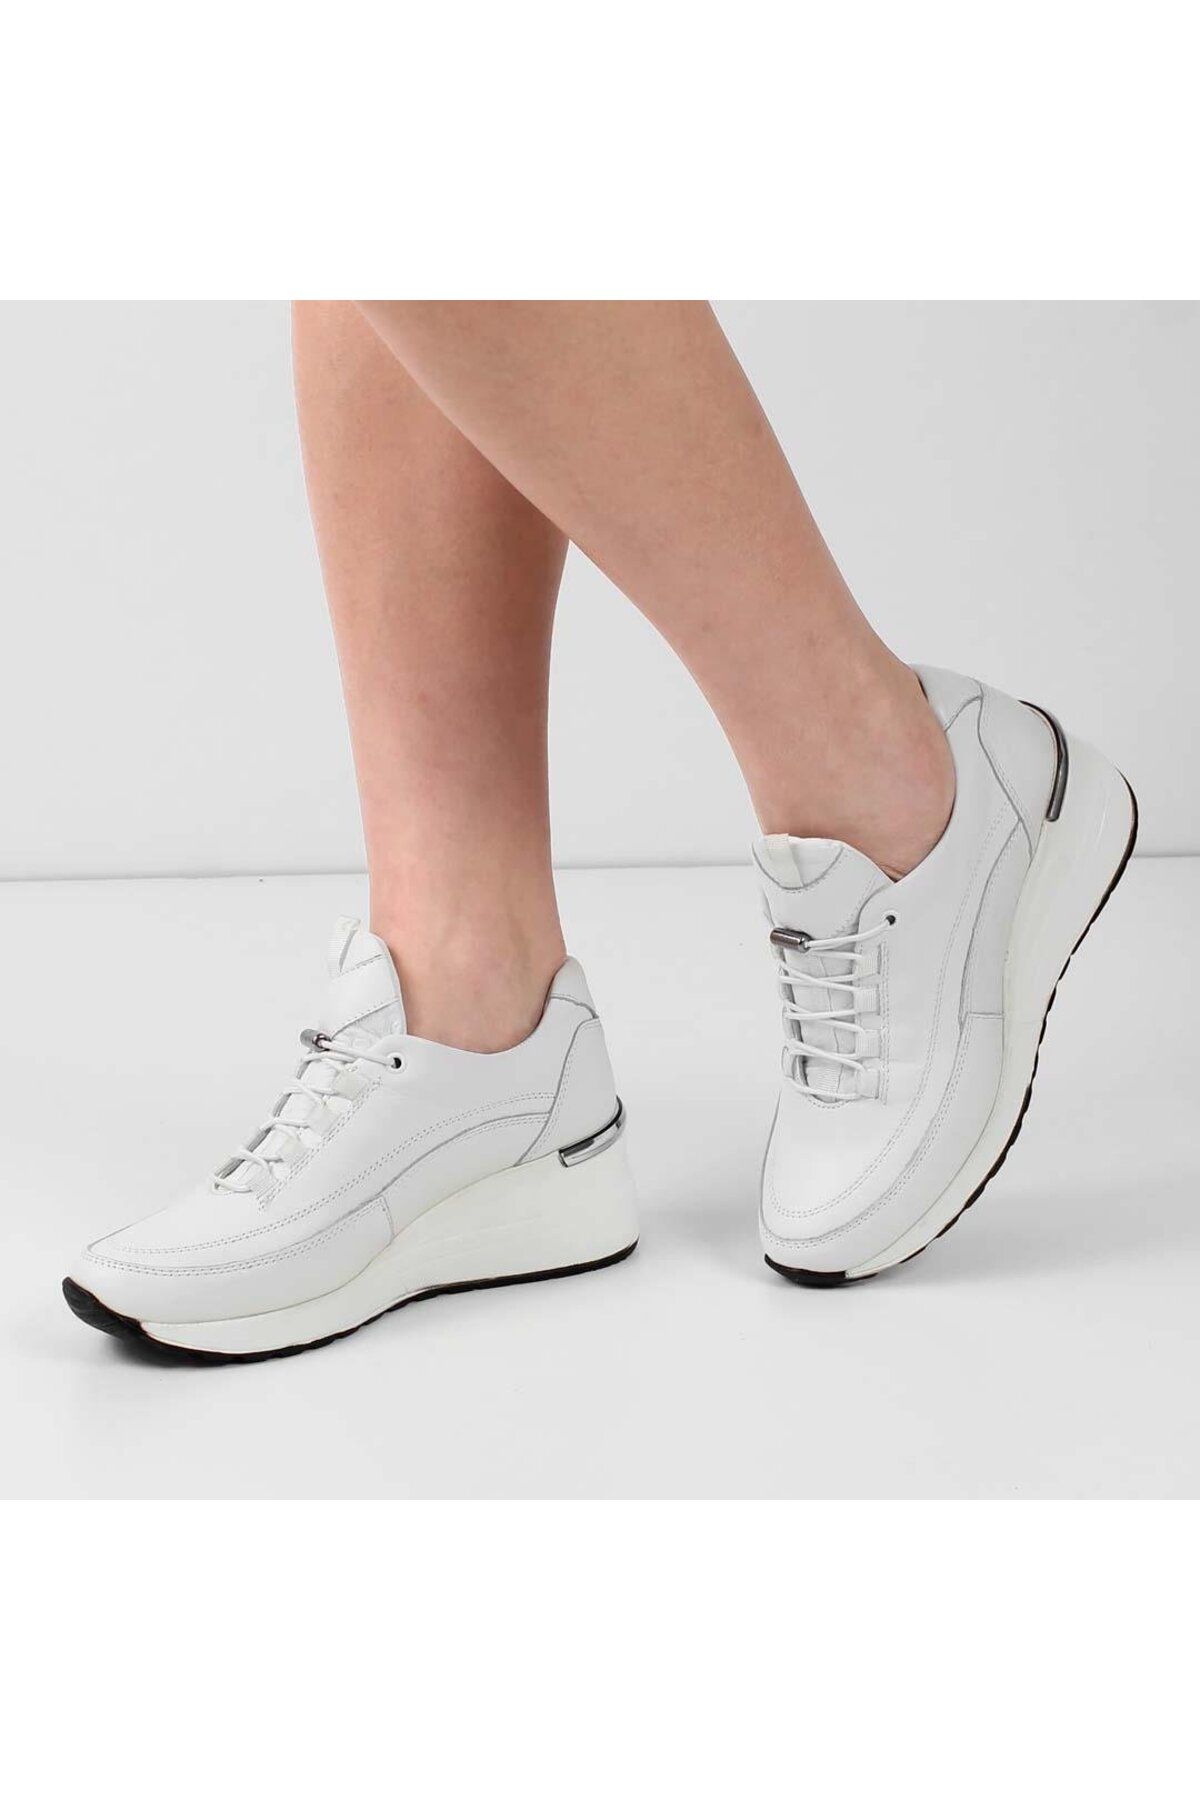 Celal Gültekin Beyaz Kadın Deri Sneakers Ayakkabı 601 31300